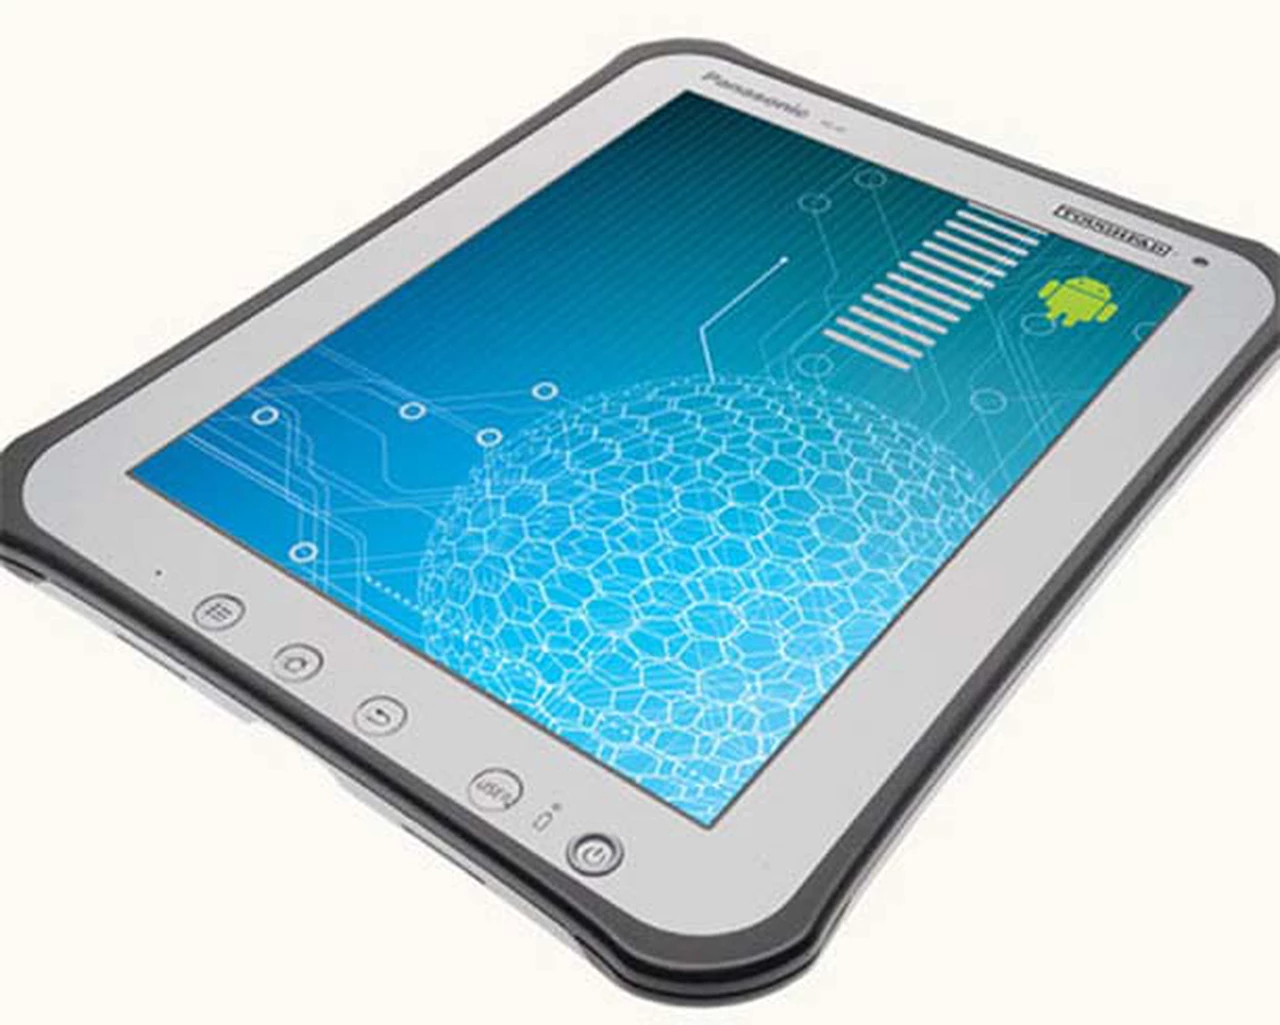 Panasonic lanza una tableta resistente a golpes y agua